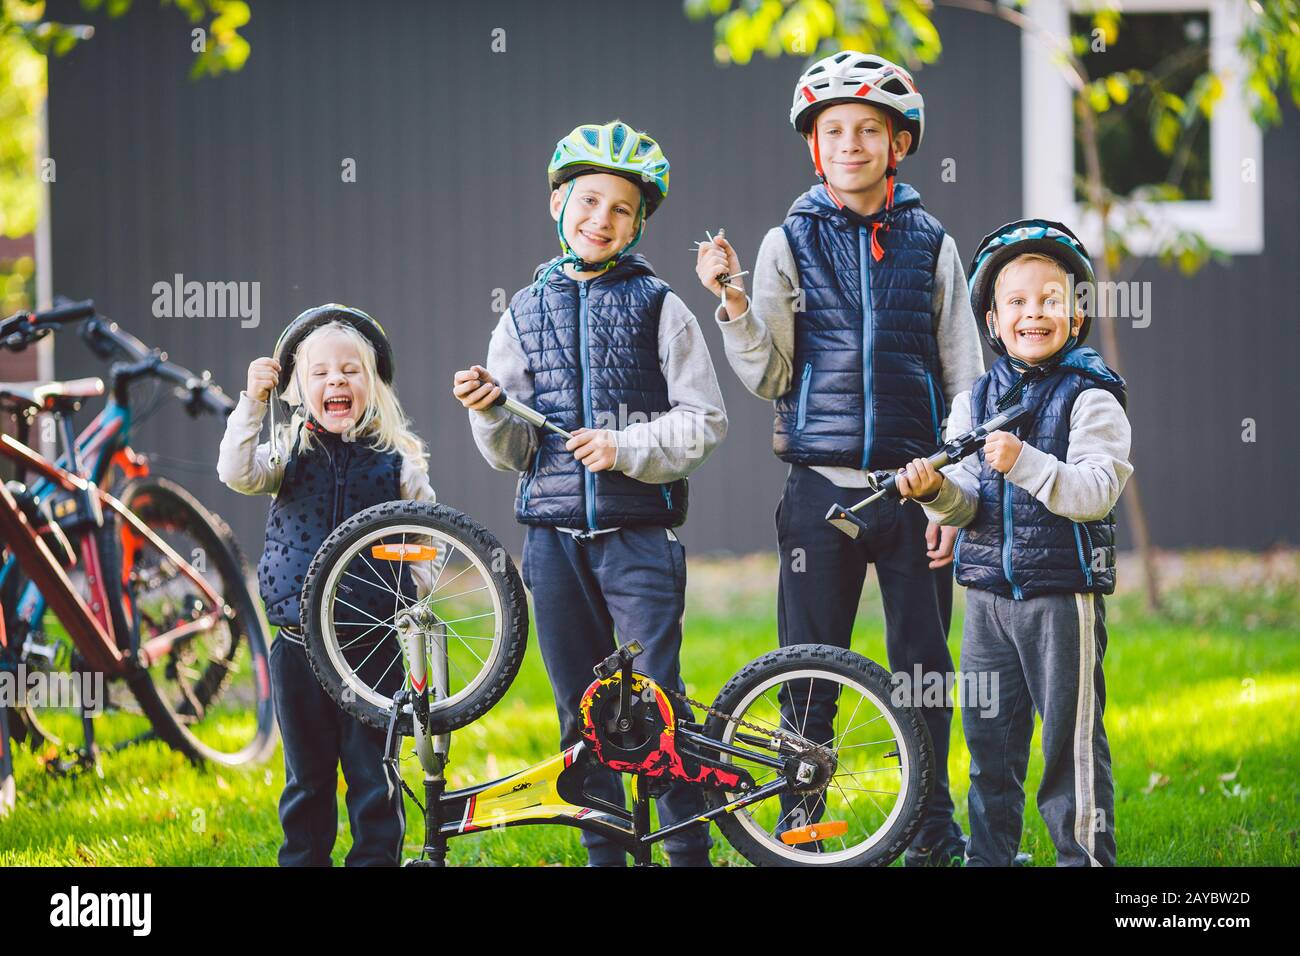 Meccanica per bambini, riparazione biciclette. Felici bambini che fissano bici insieme all'aperto in giornata di sole. Concetto di riparazione della bicicletta. Famiglia di lavoro di squadra Foto Stock